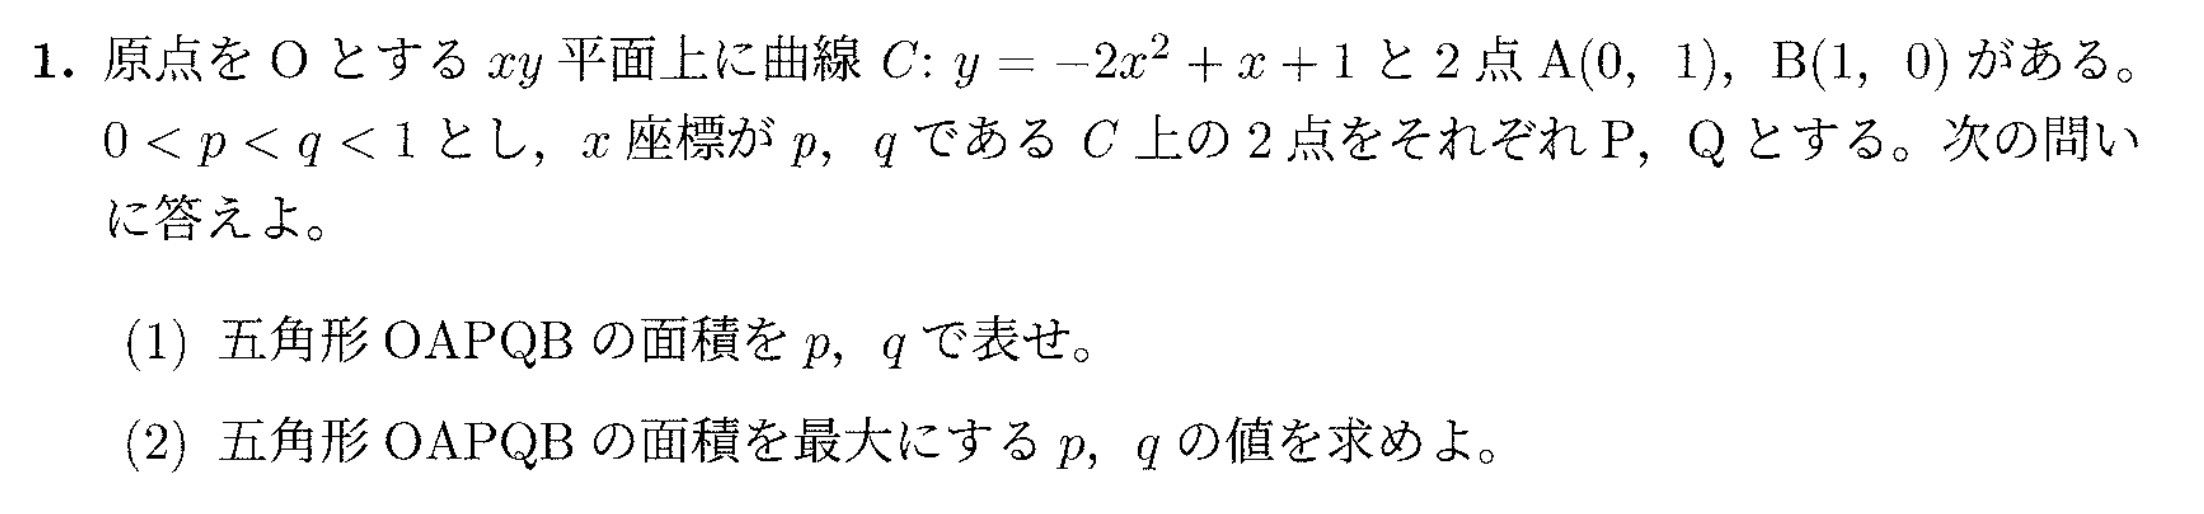 名古屋市立大学入試文系数学2022年(令和4年)過去問題